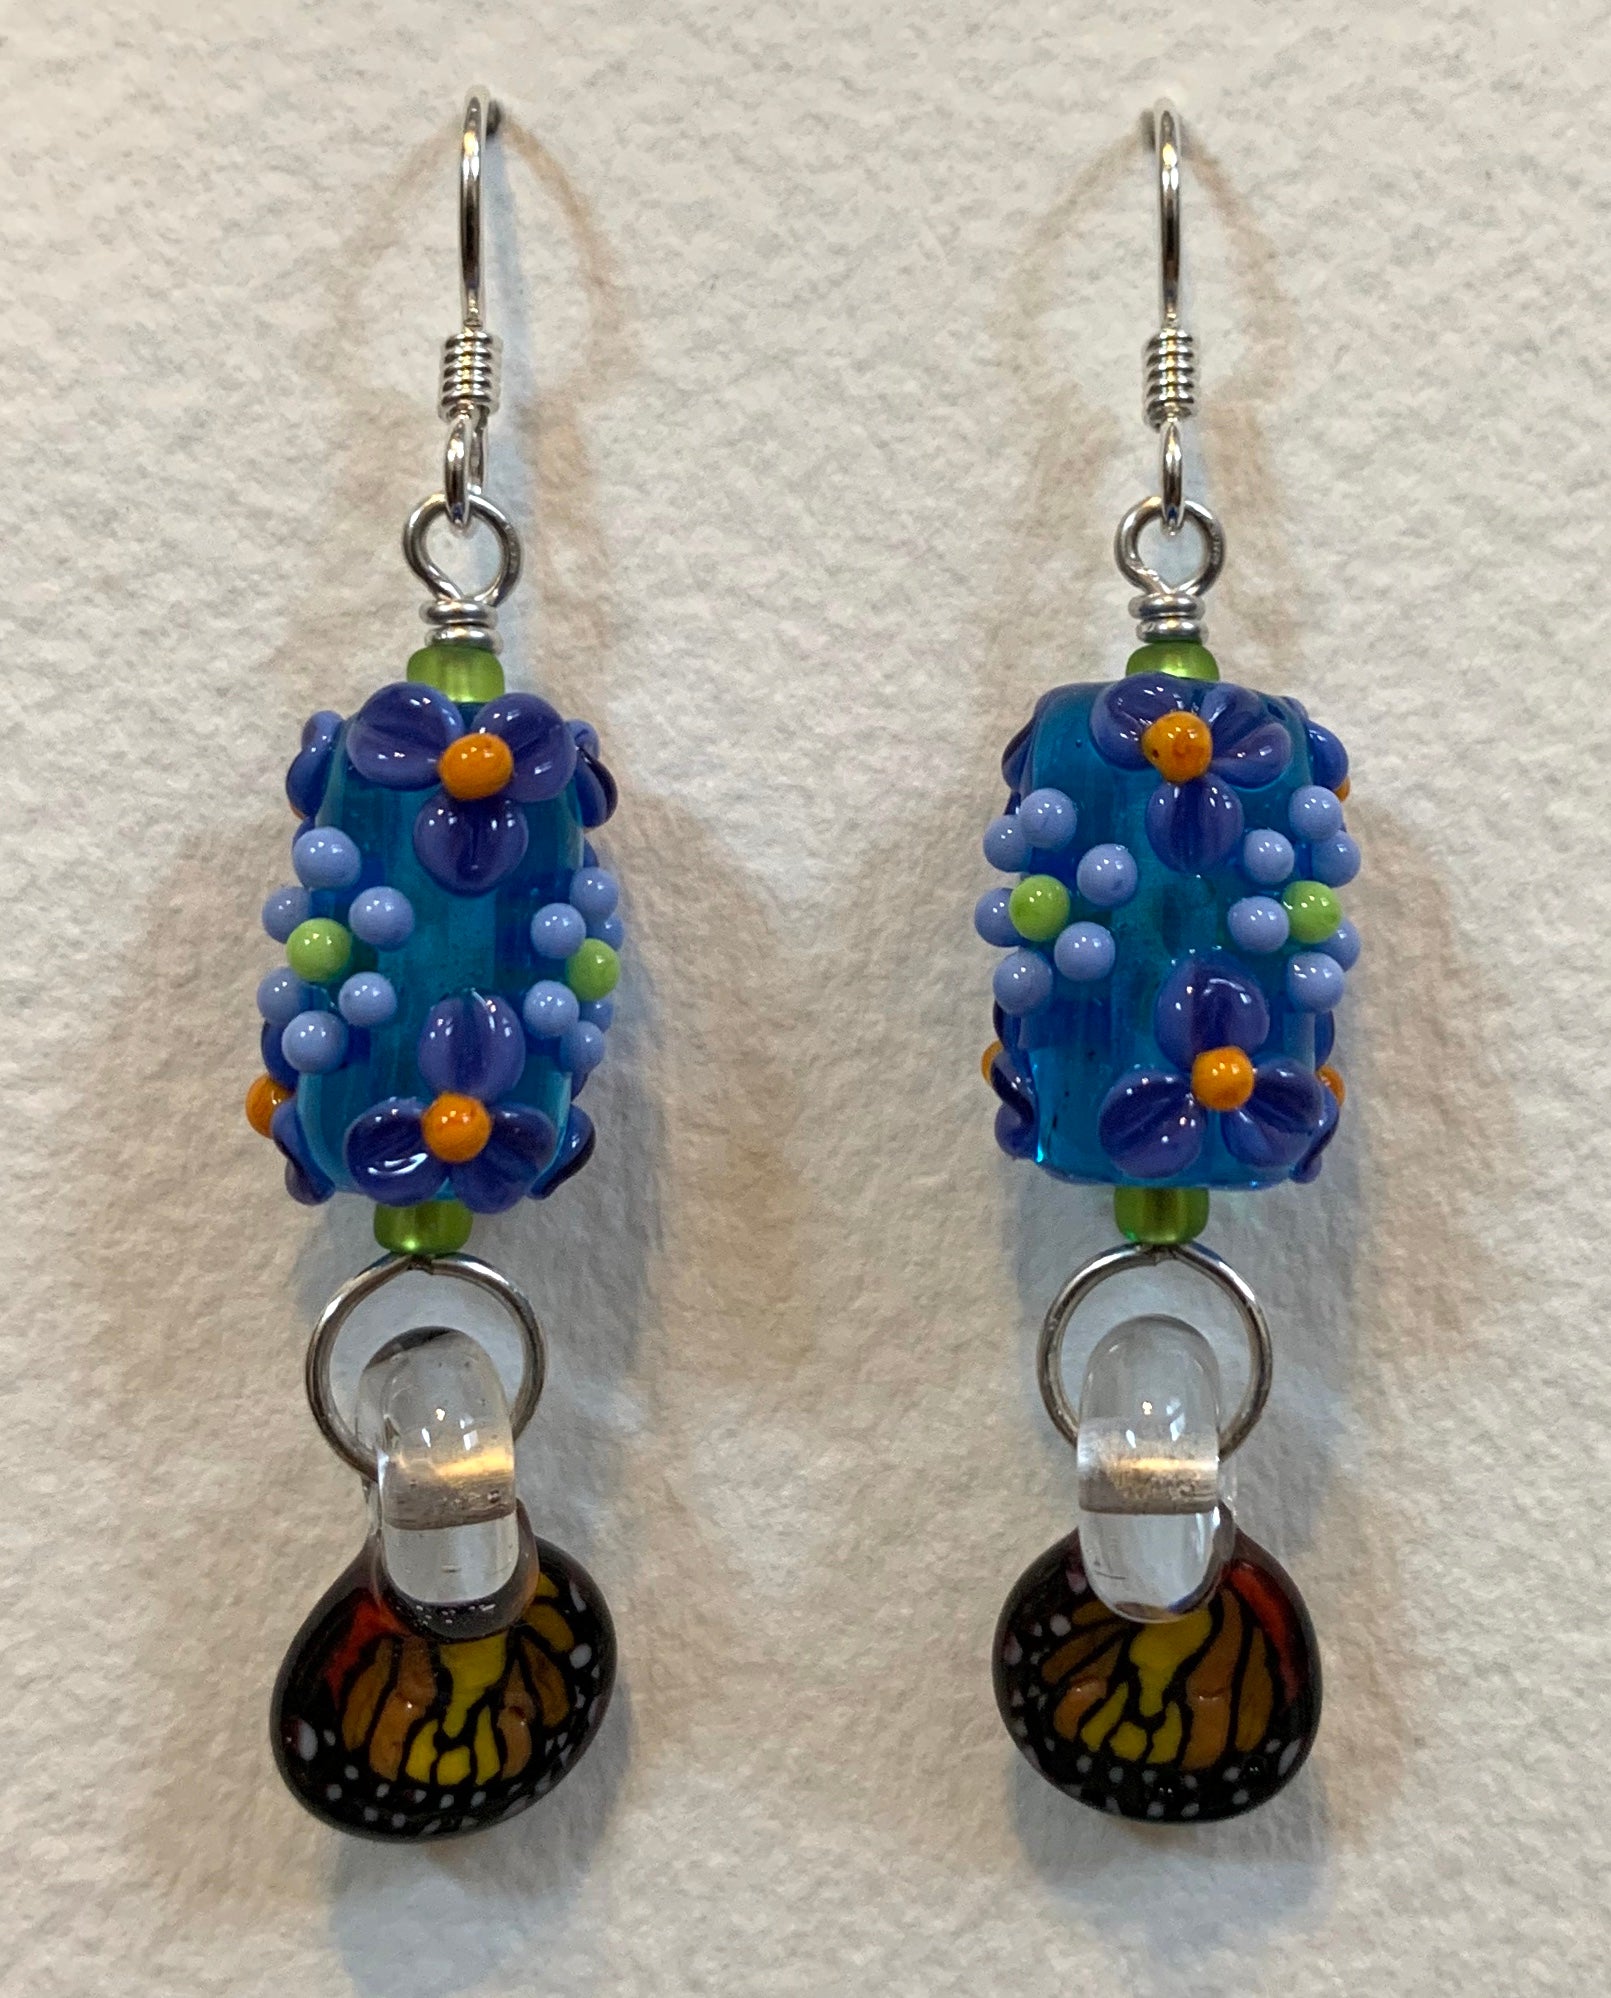 Flower earrings with butterfly wings